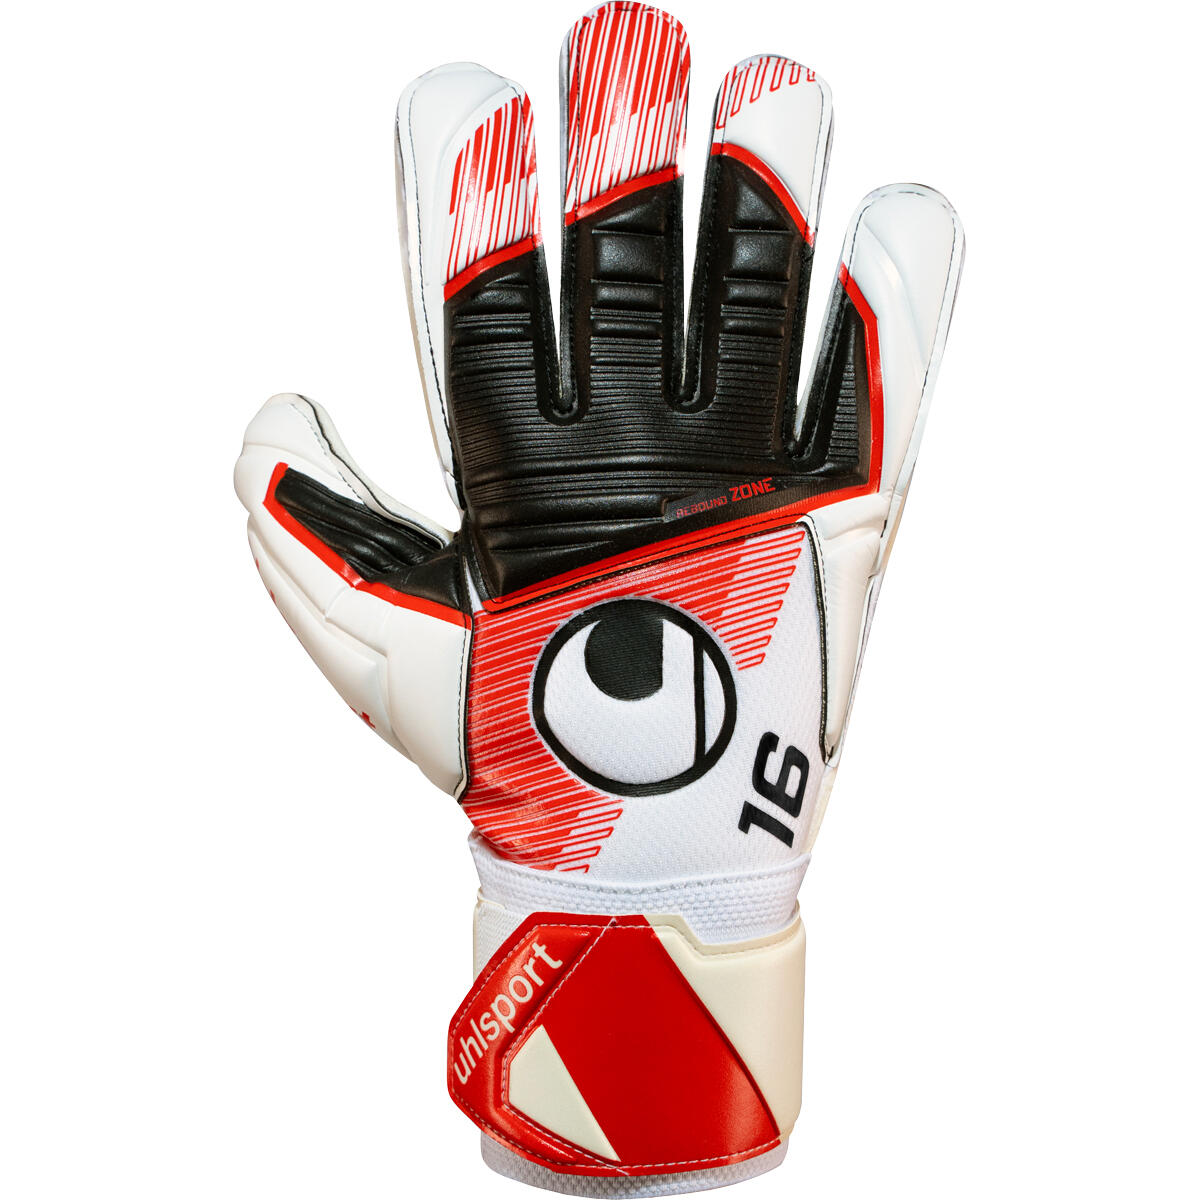 UHLSPORT Uhlsport Supersoft Maignan #344 Goalkeeper Gloves